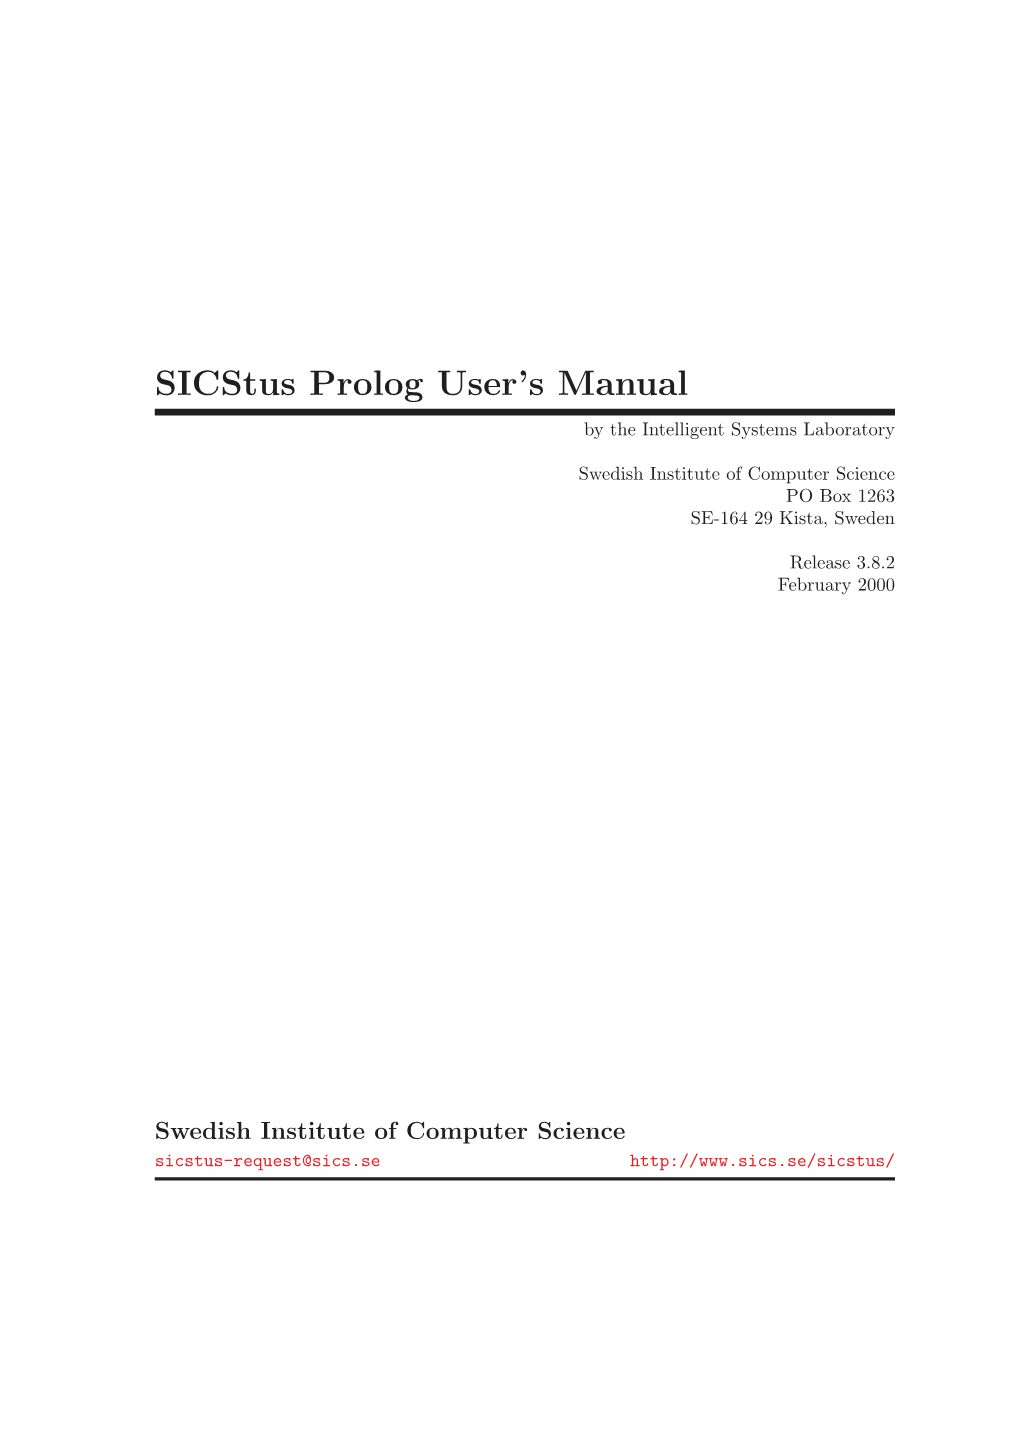 In Sicstus Prolog Manual